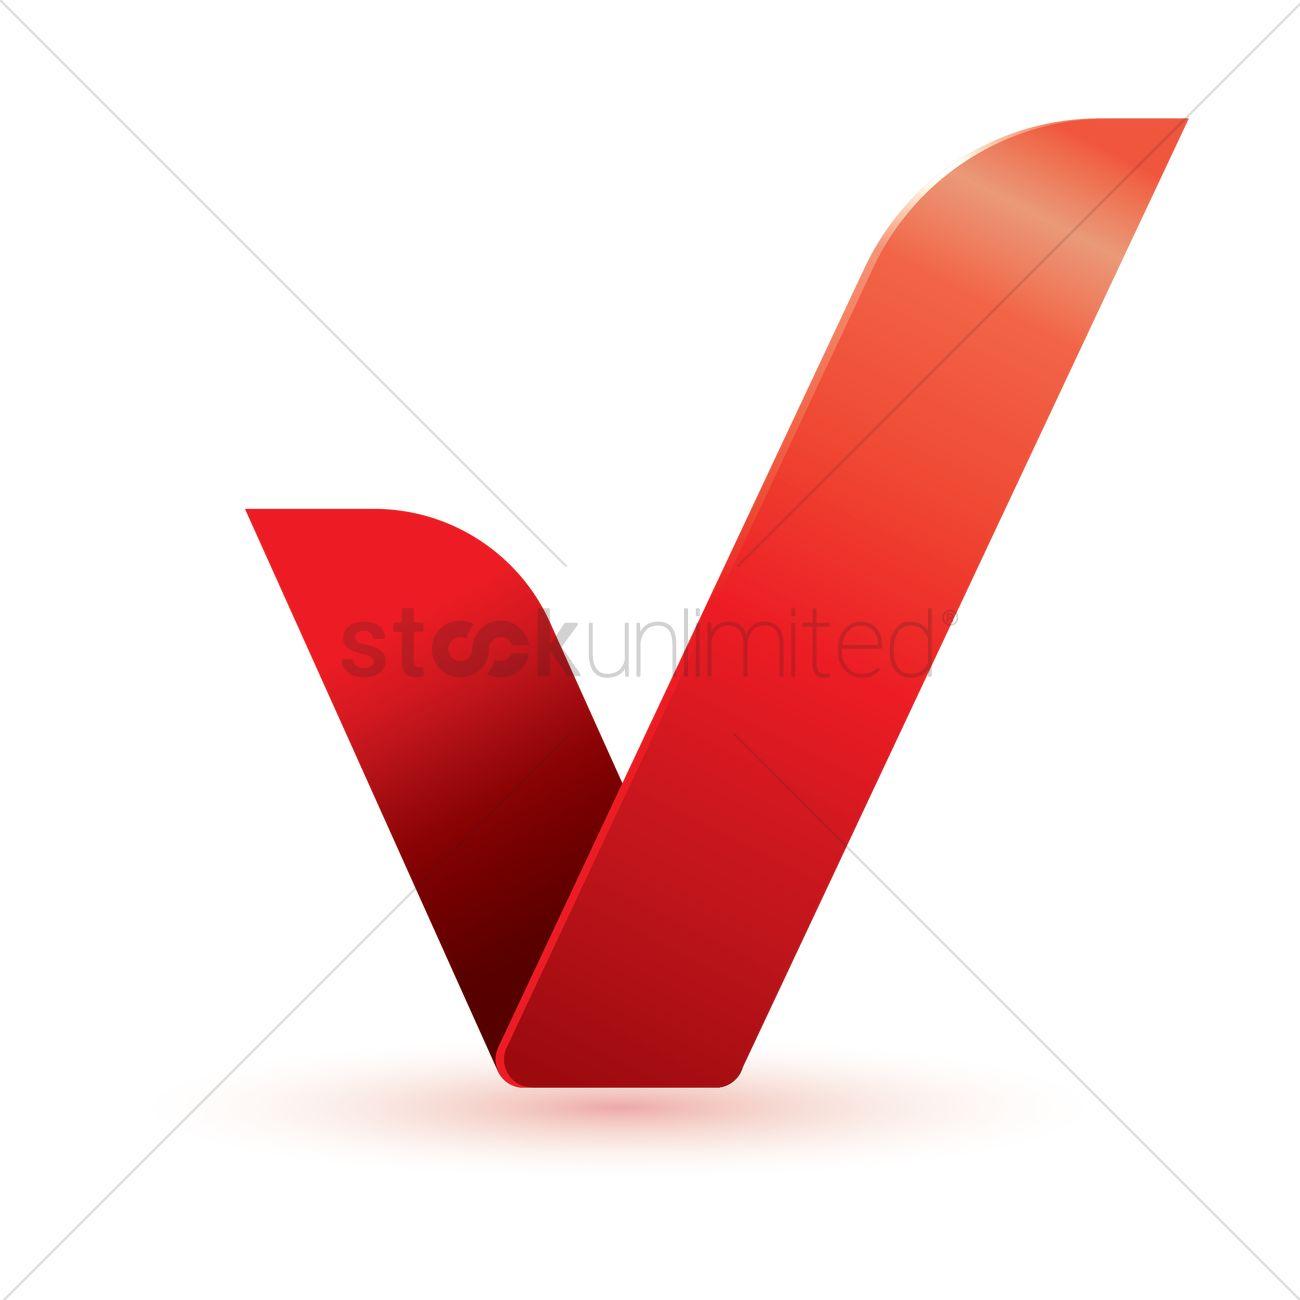 Checkmark Logo - Checkmark logo element Vector Image